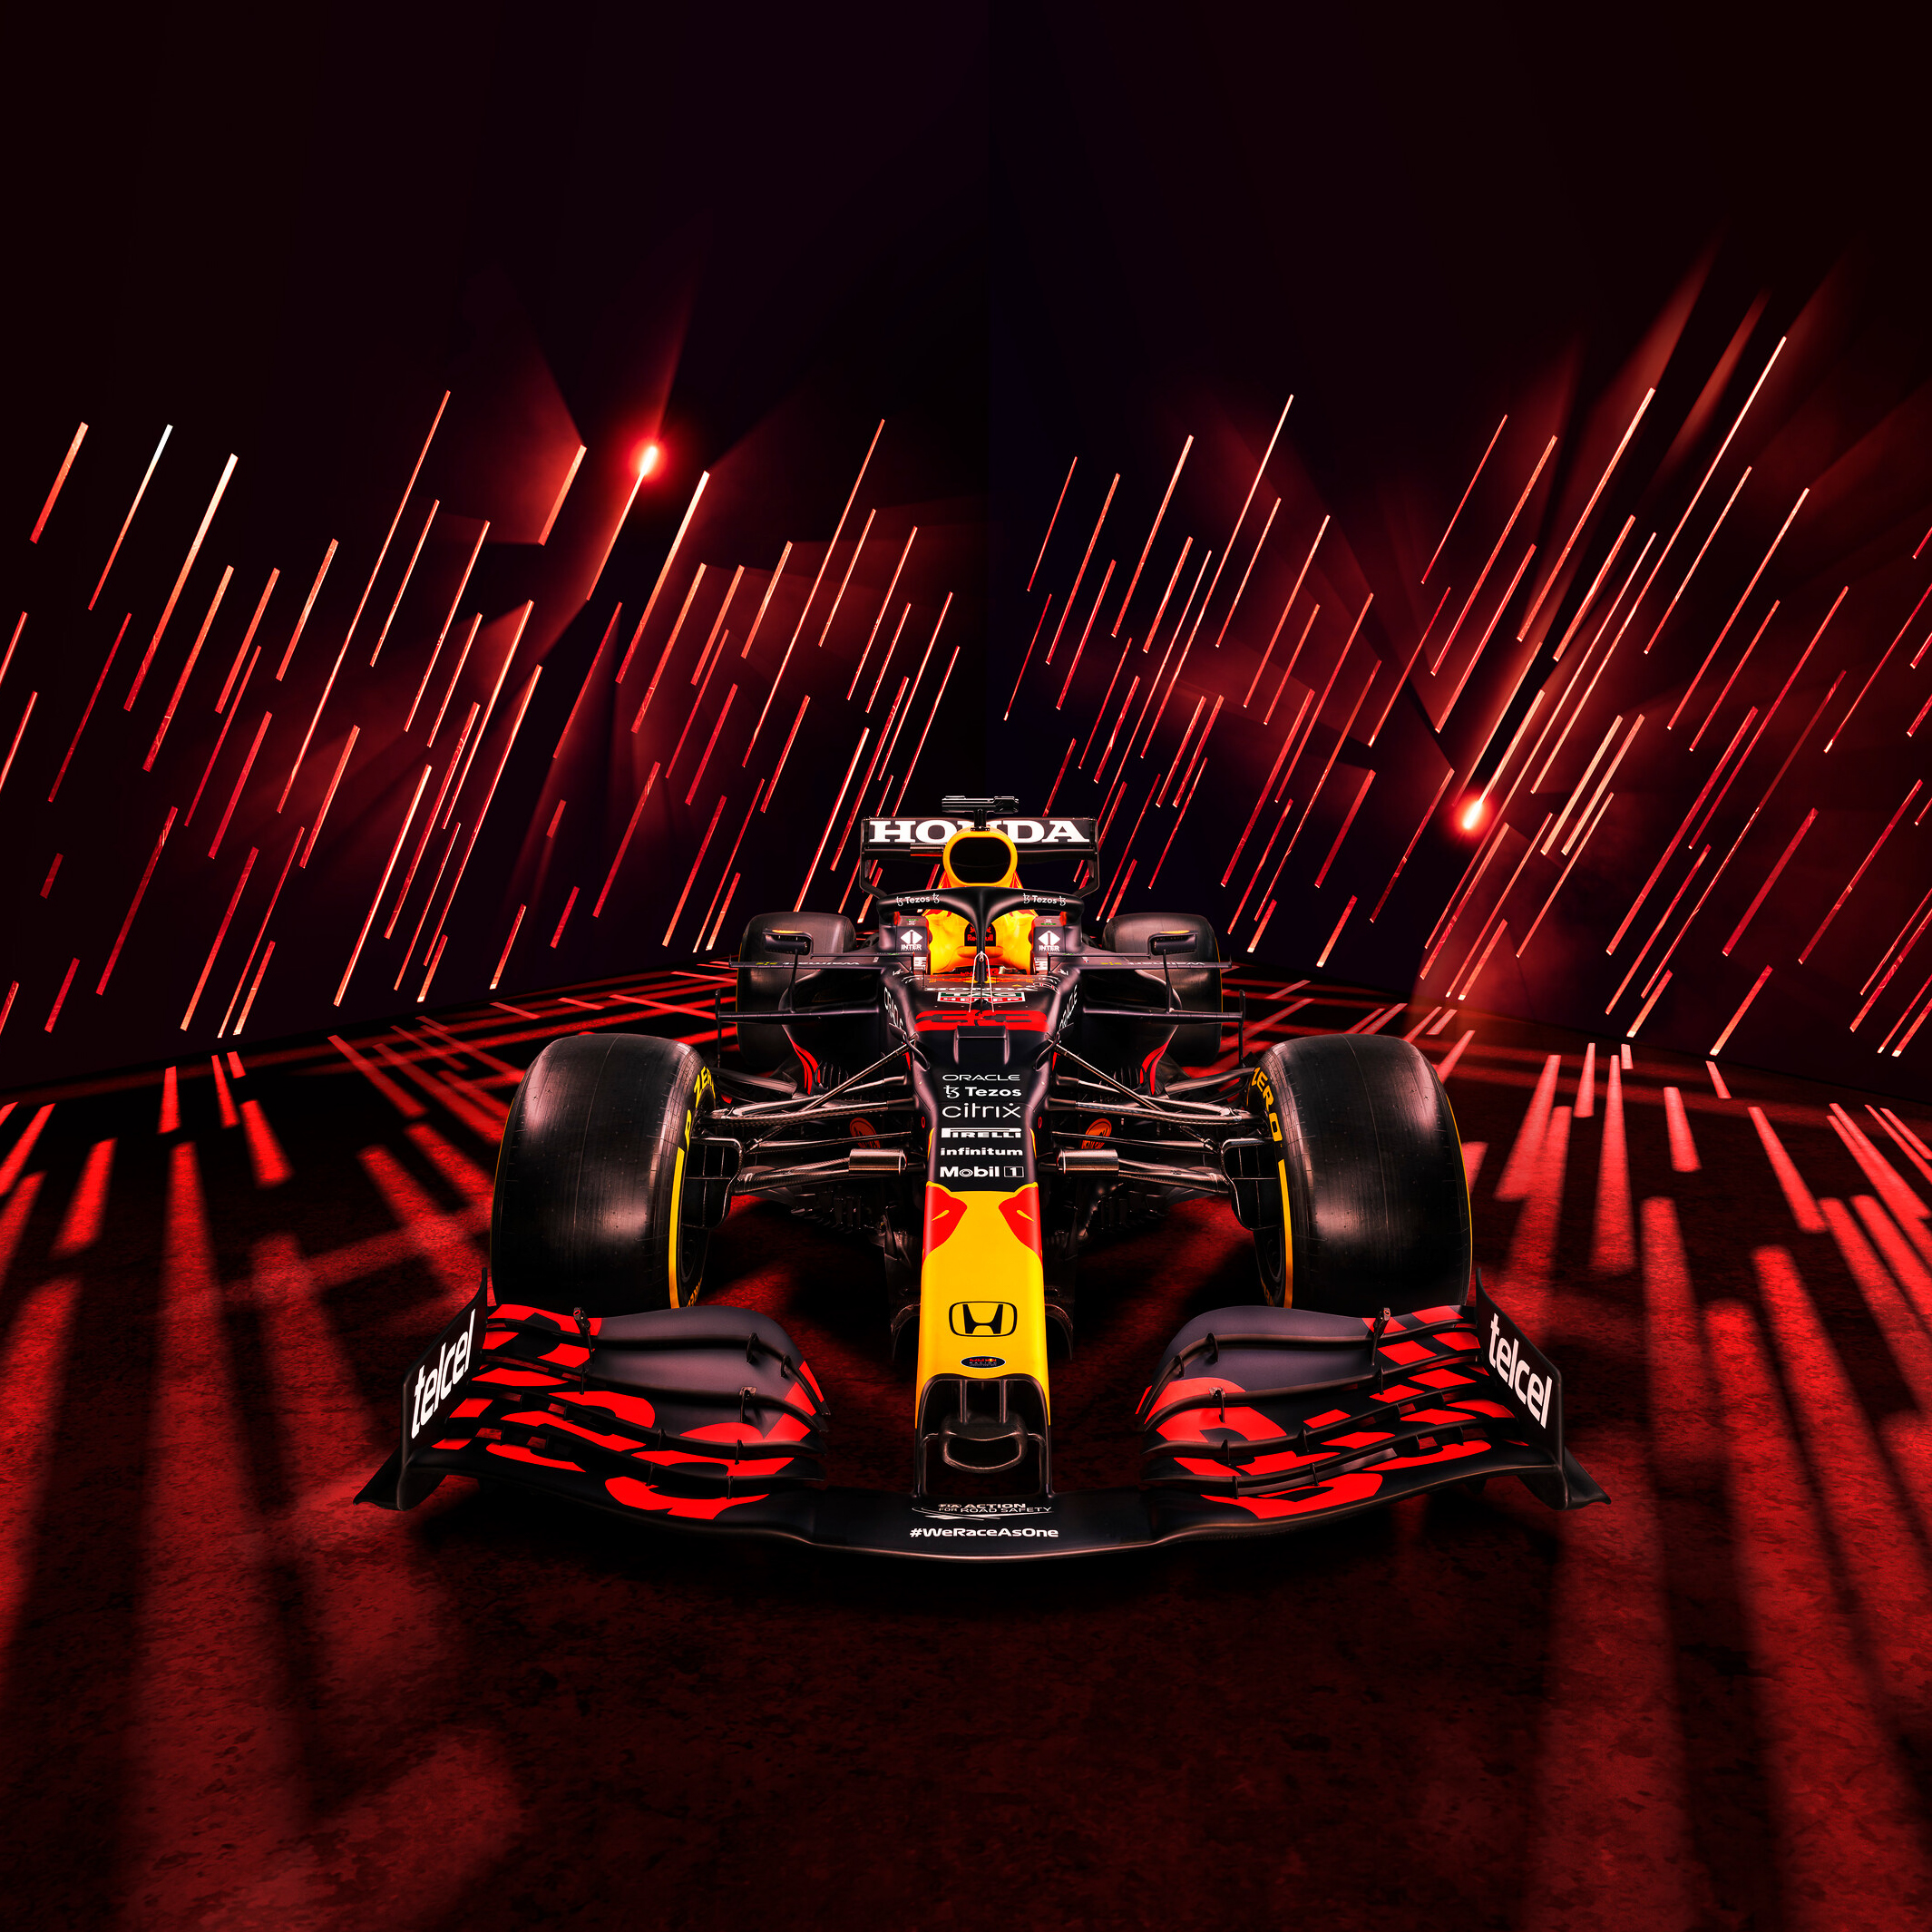 Red Bull Racing: Đội đua F1 nổi tiếng thế giới Red Bull Racing sẽ đem đến cho bạn những trải nghiệm tuyệt vời. Tốc độ và sự căng thẳng đầy kịch tính của các cuộc đua sẽ khiến bạn không thể bỏ qua chiếc xe này.